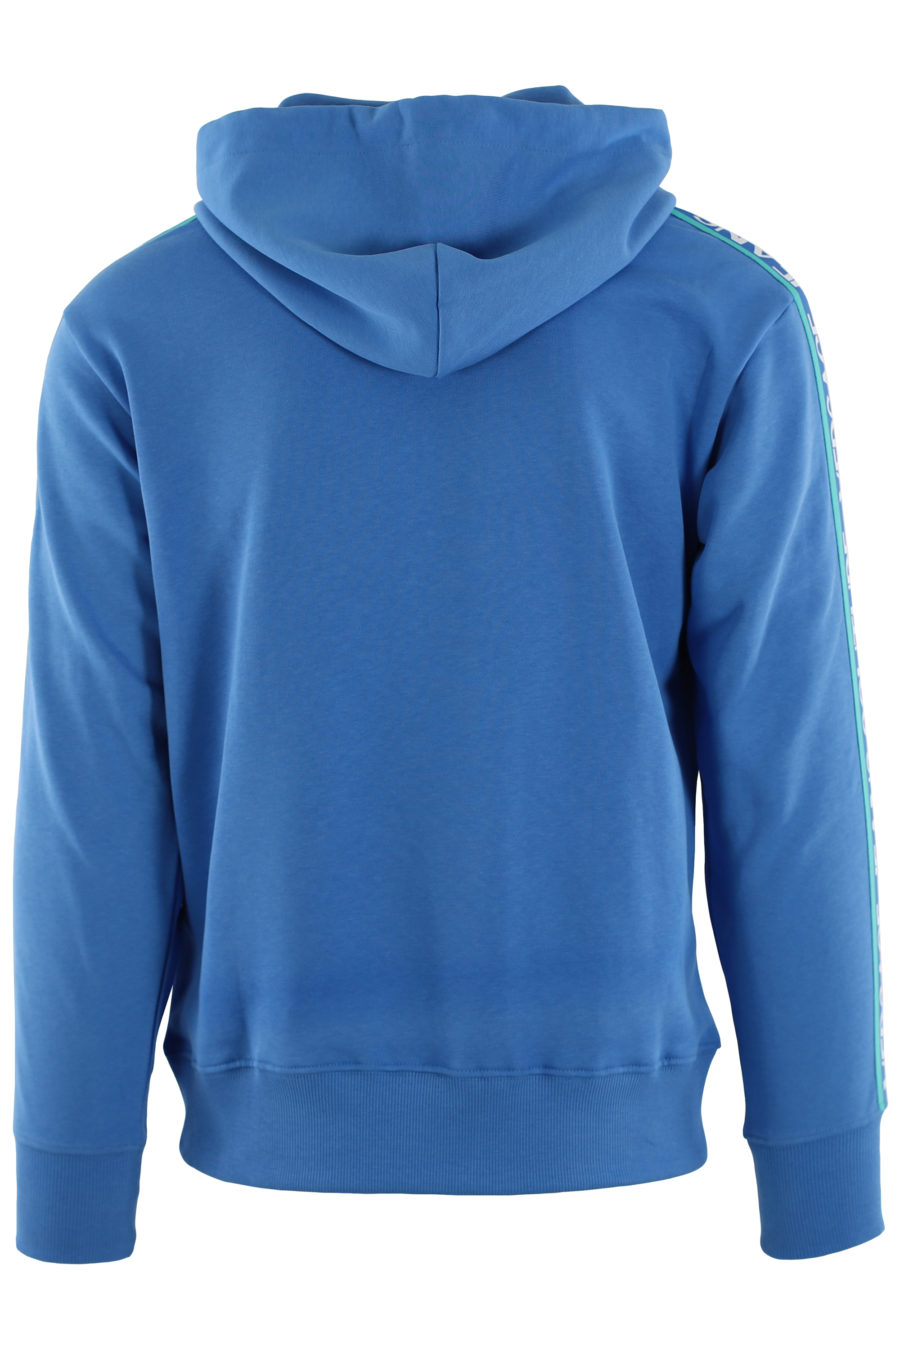 Sudadera azul con capucha y cinta azul con logotipo - IMG 0453